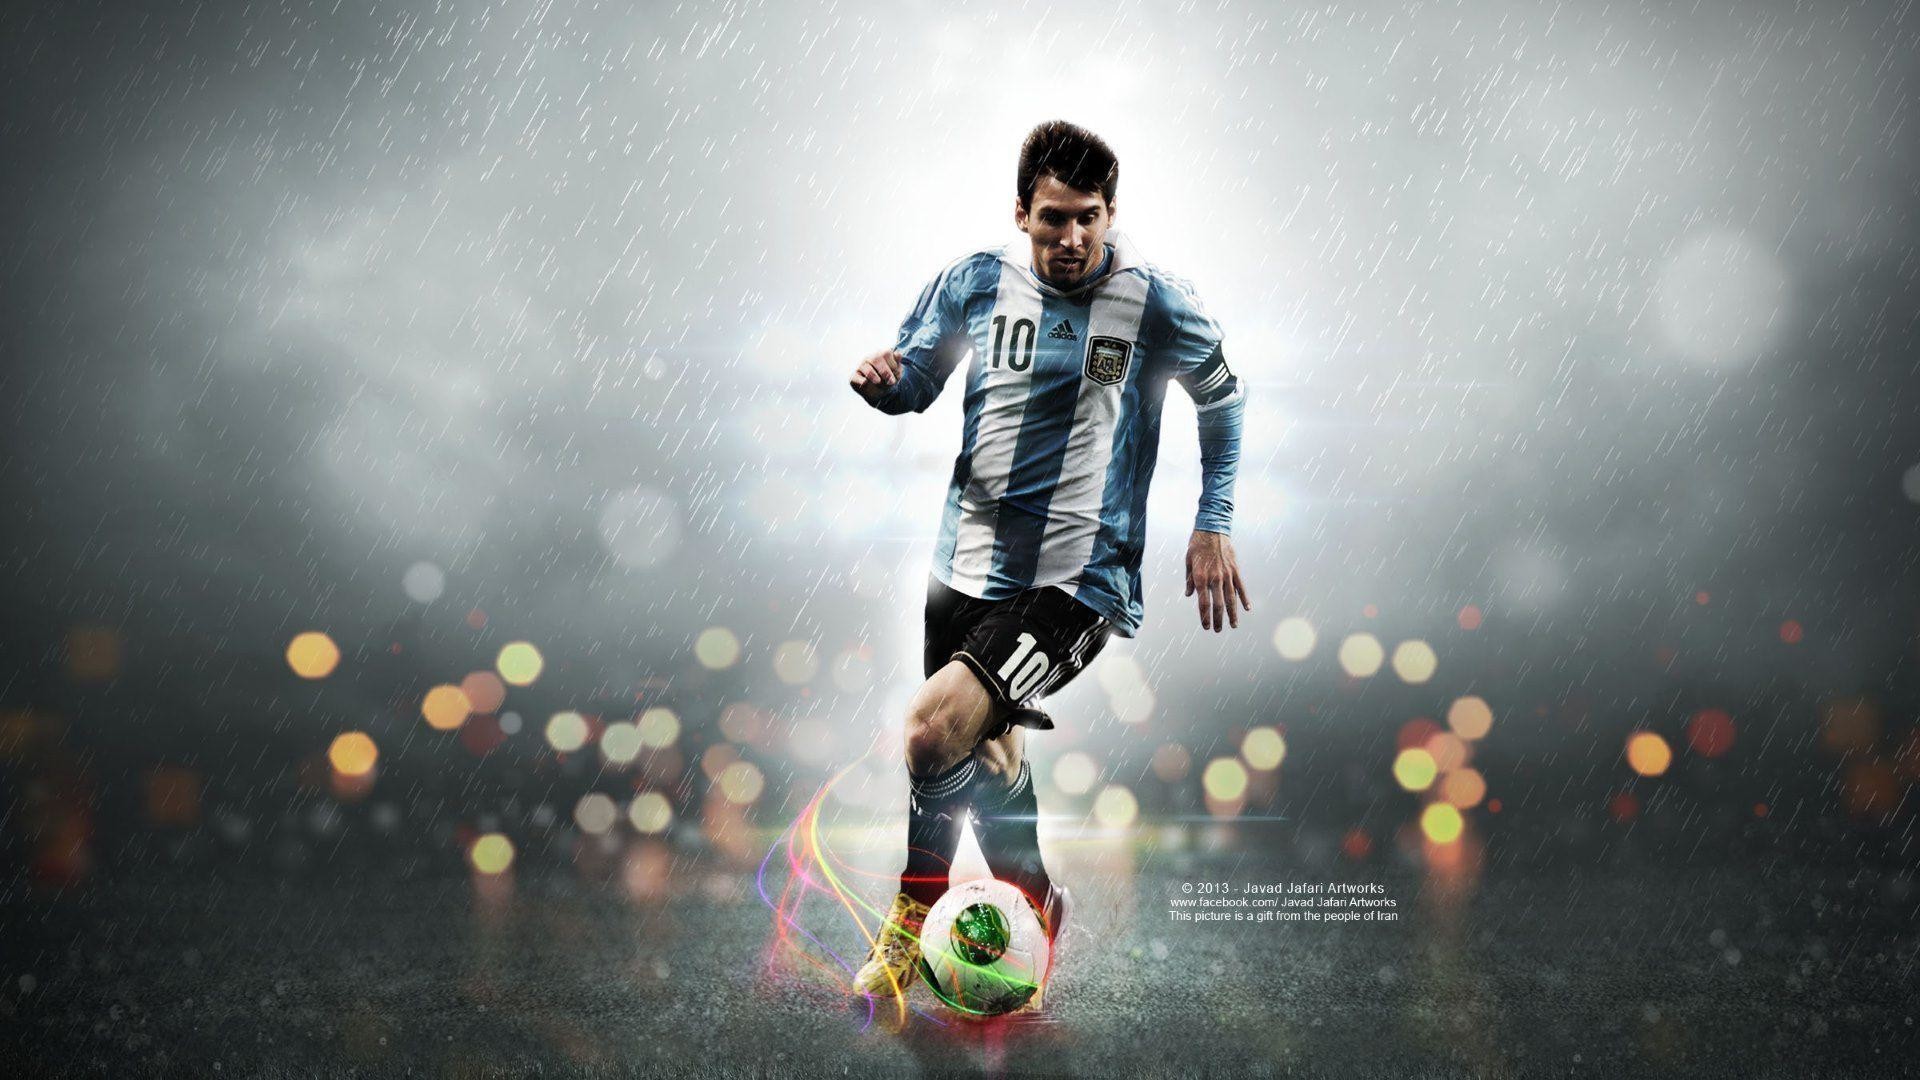 Hãy đón xem những hình nền Lionel Messi HD đẹp lung linh và tạo nên một không gian làm việc và giải trí thật độc đáo. Cùng chiêm ngưỡng vẻ đẹp của siêu sao bóng đá này và tận hưởng những giây phút thư giãn tuyệt vời.